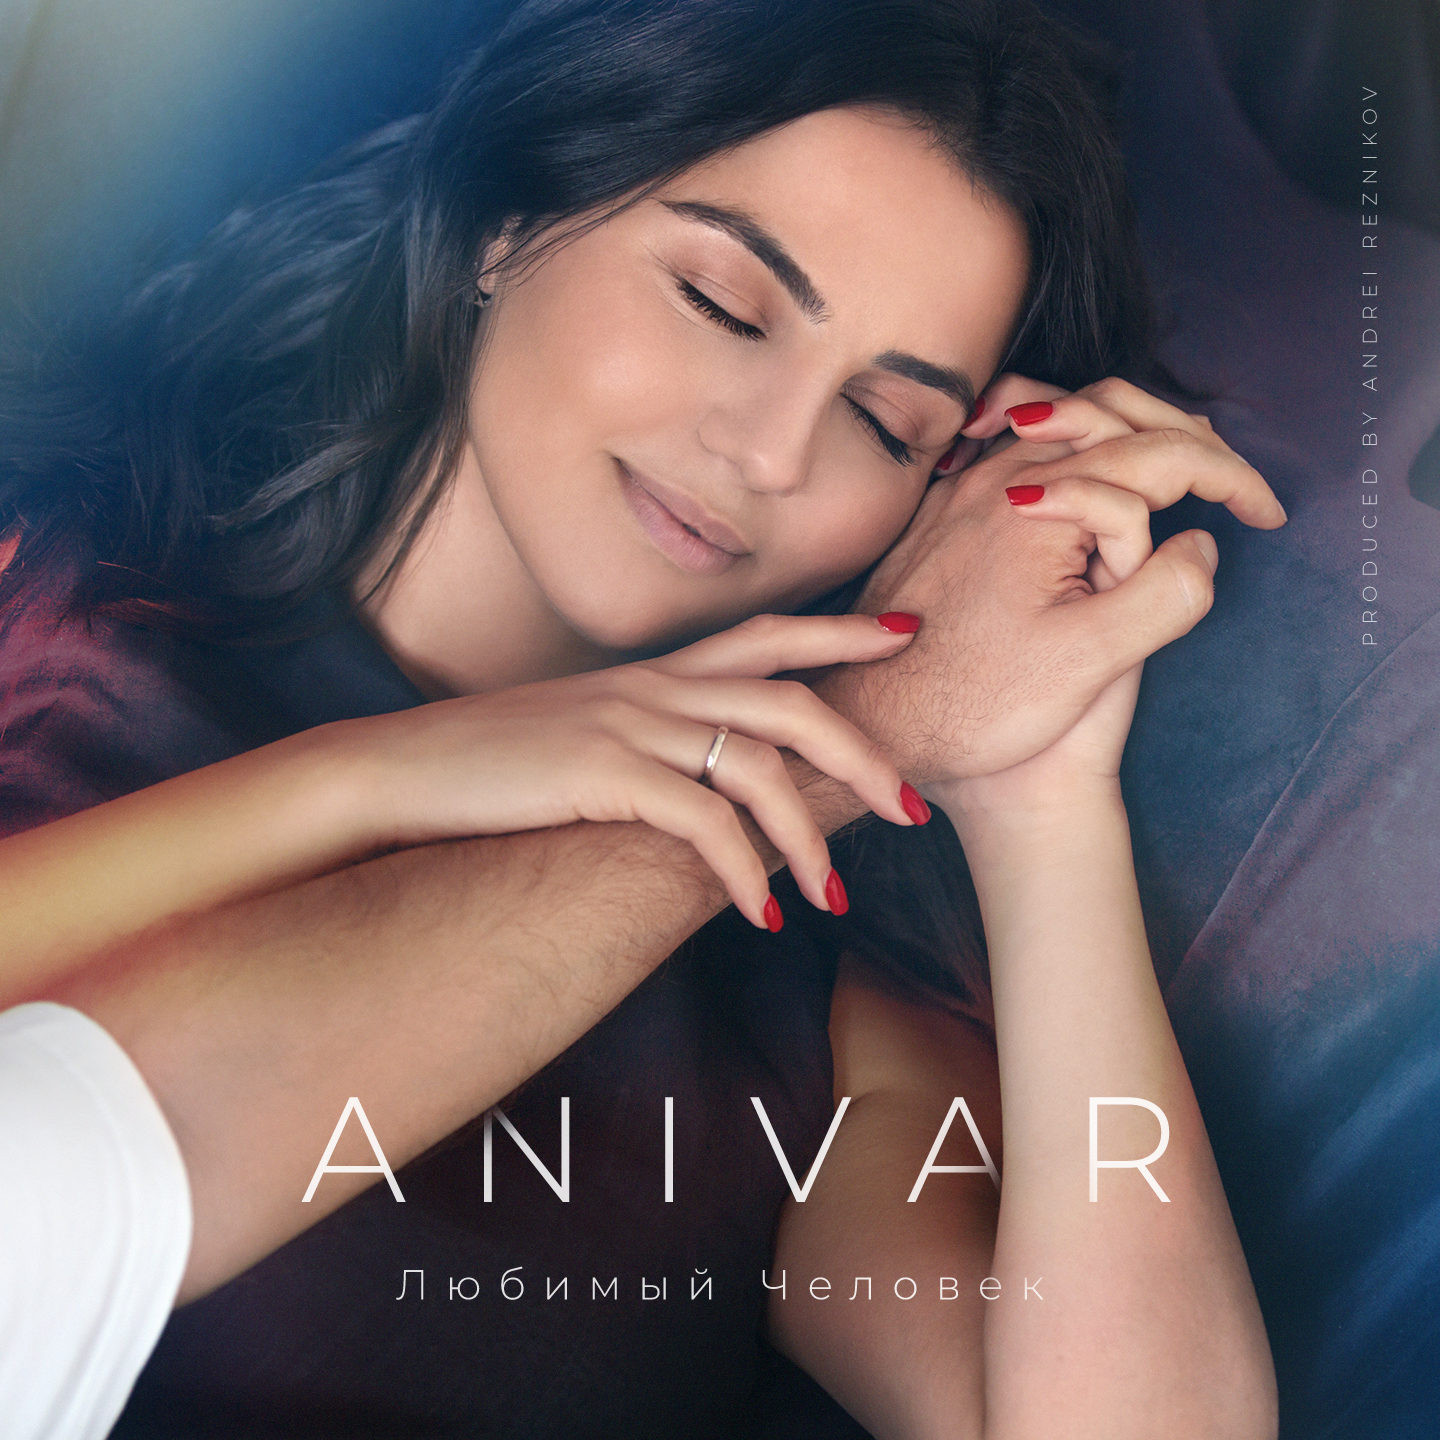 Download new song Anivar – Любимый человек